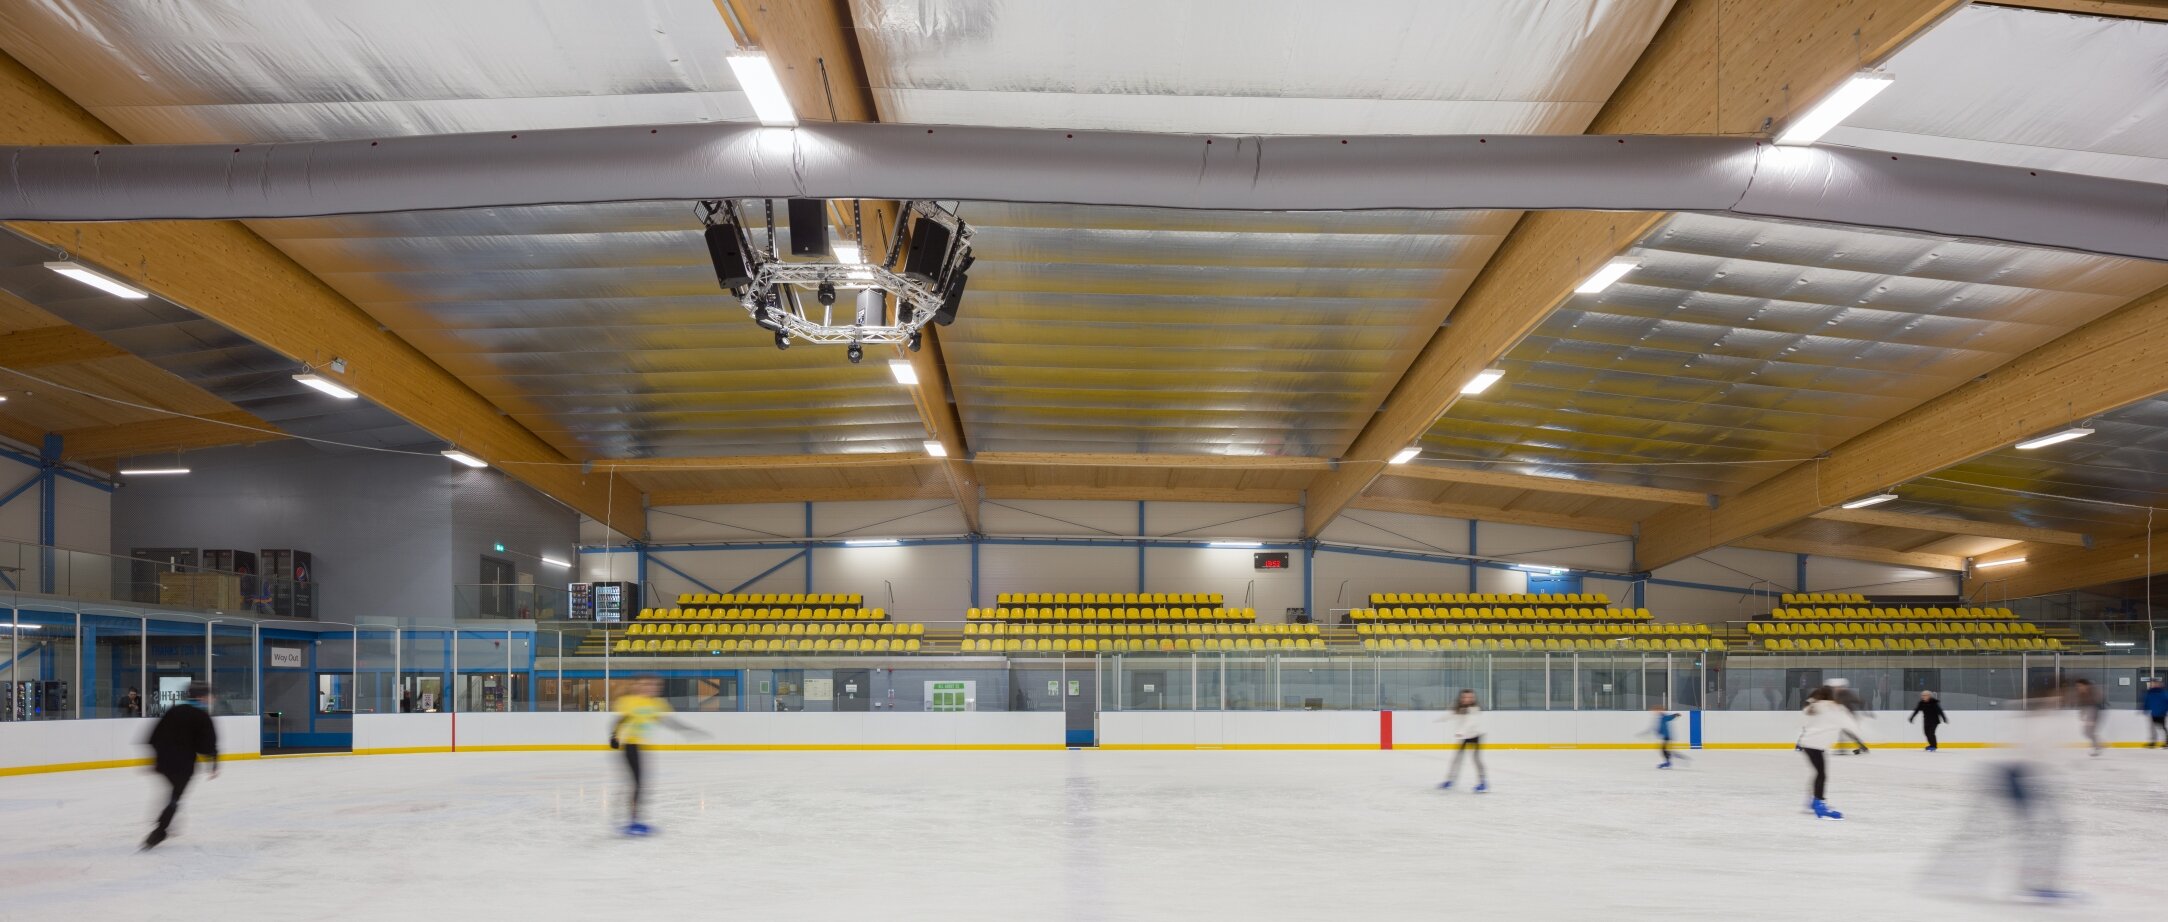 MSAP_QOCA_Cambridge Ice Arena_IMG_0578-Pano.jpg